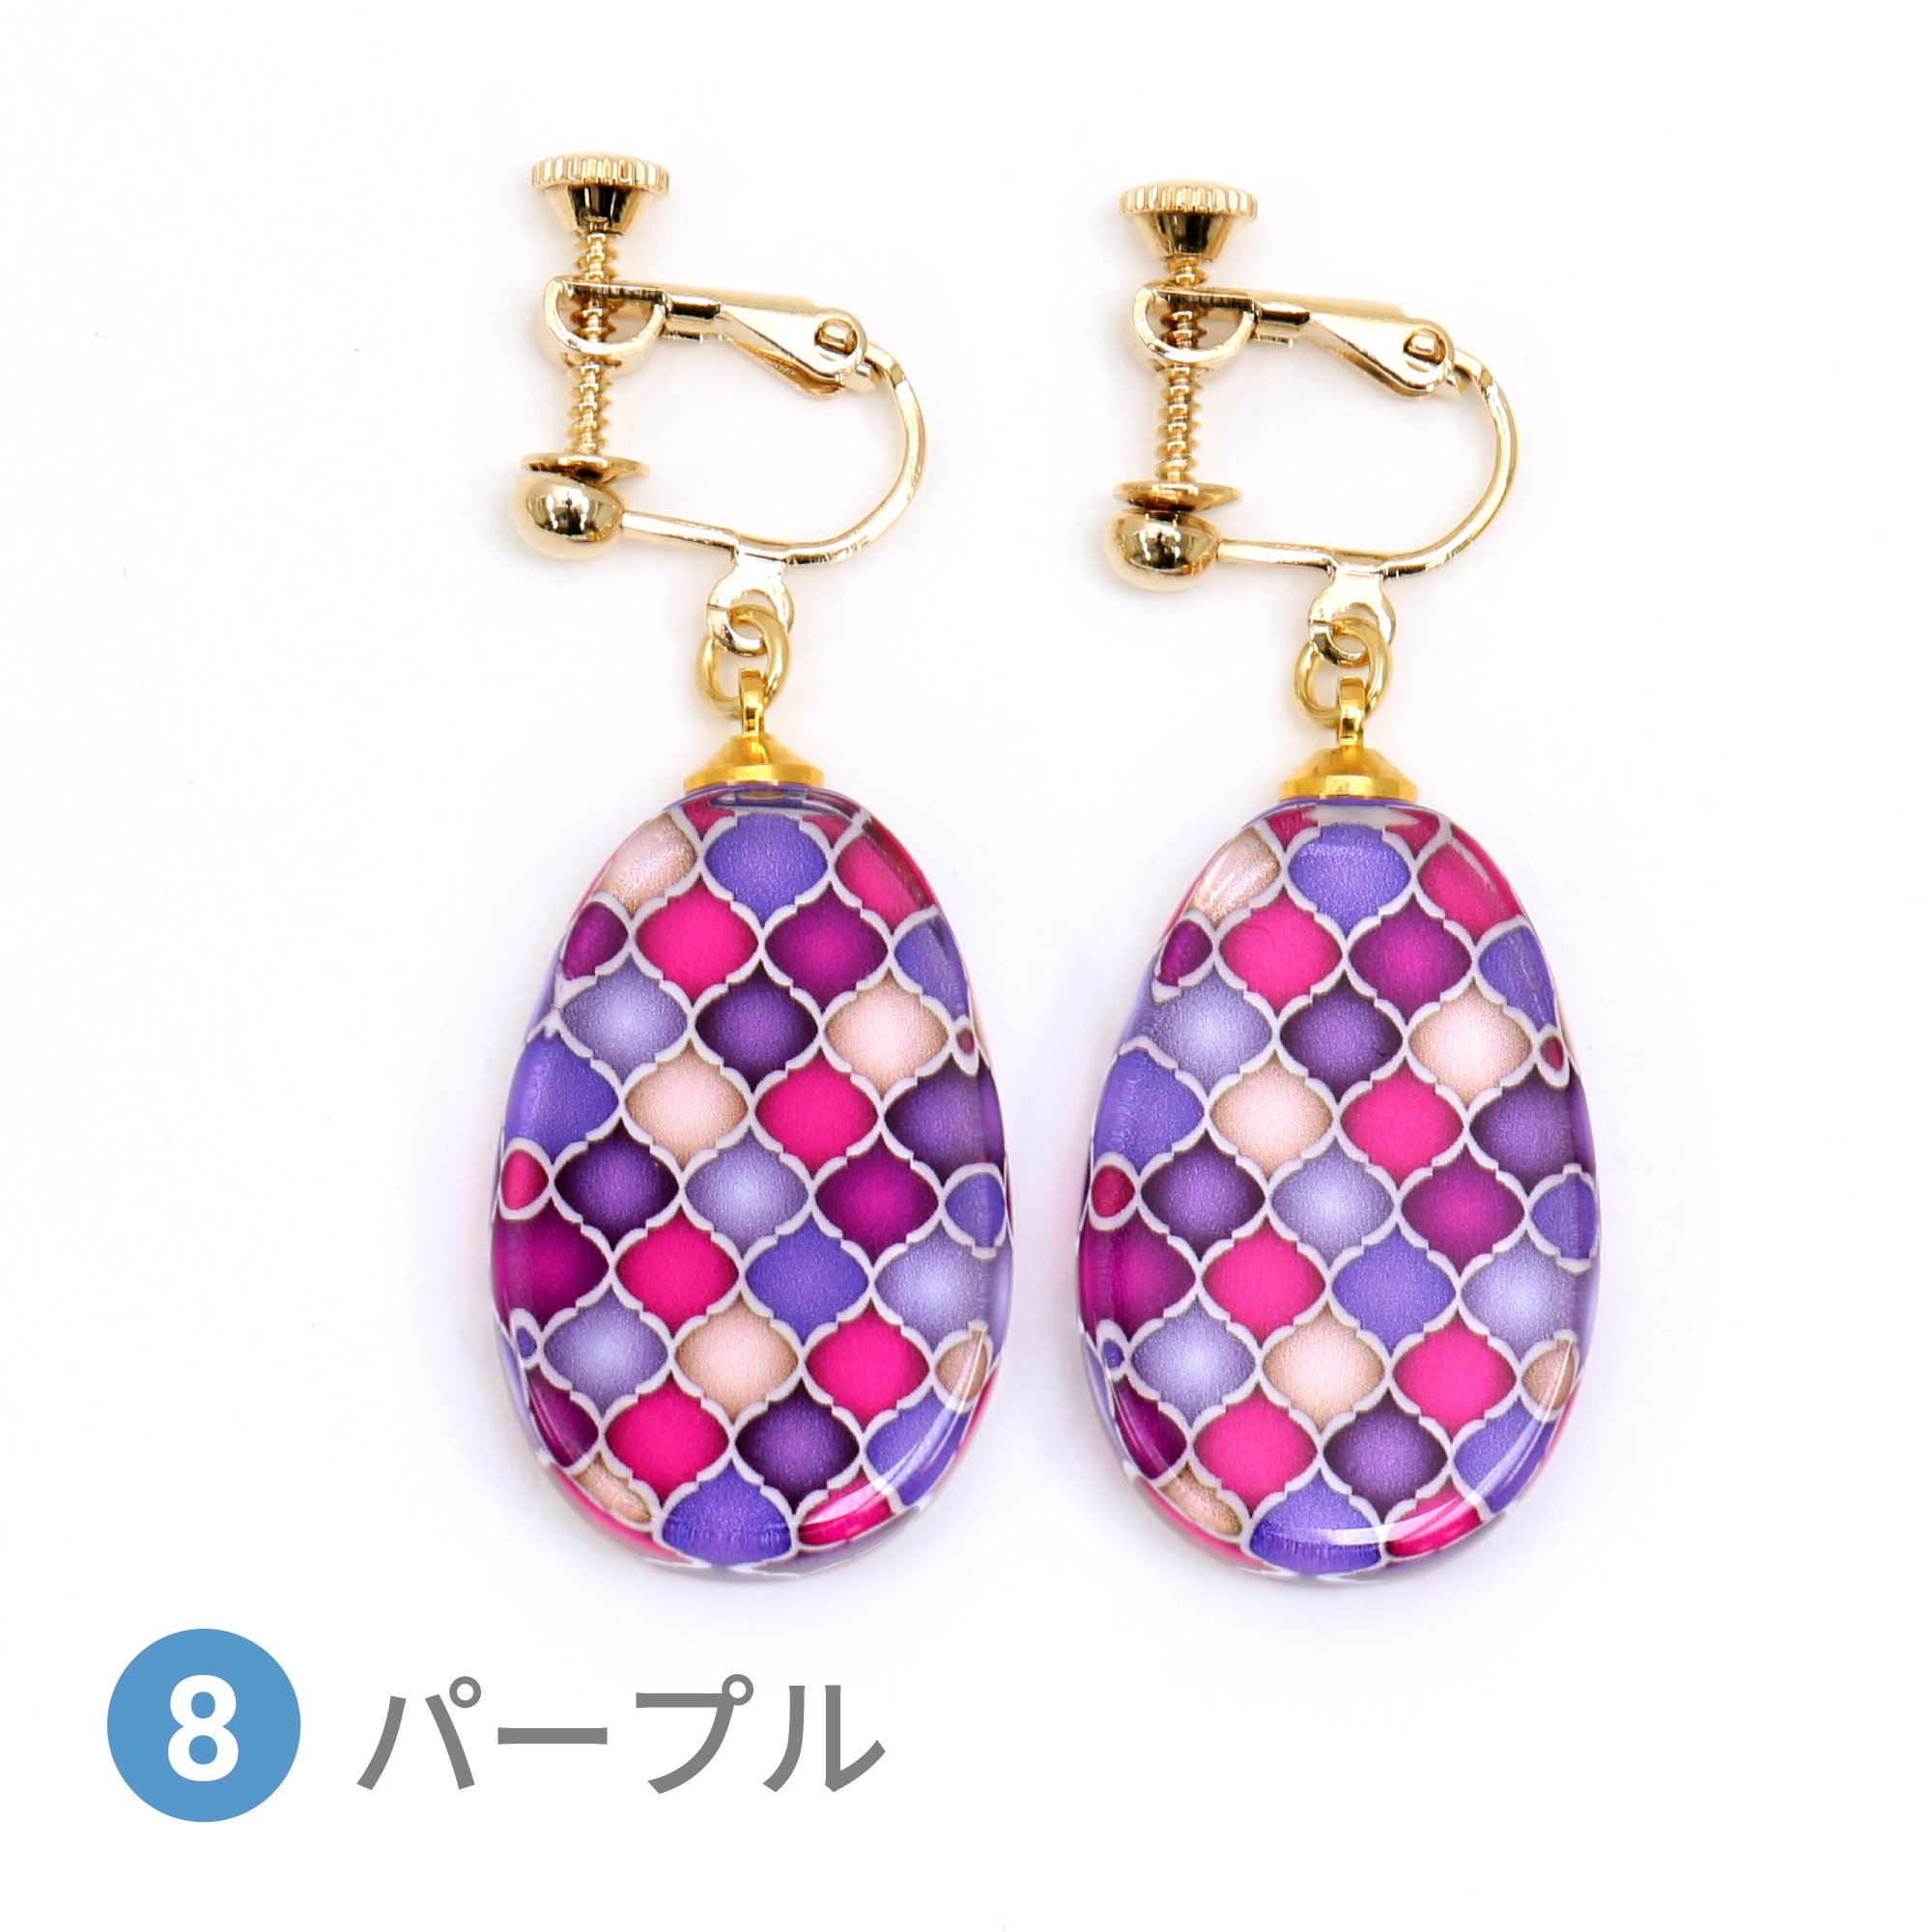 Glass accessories Earring MOROCCAN purple drop shape